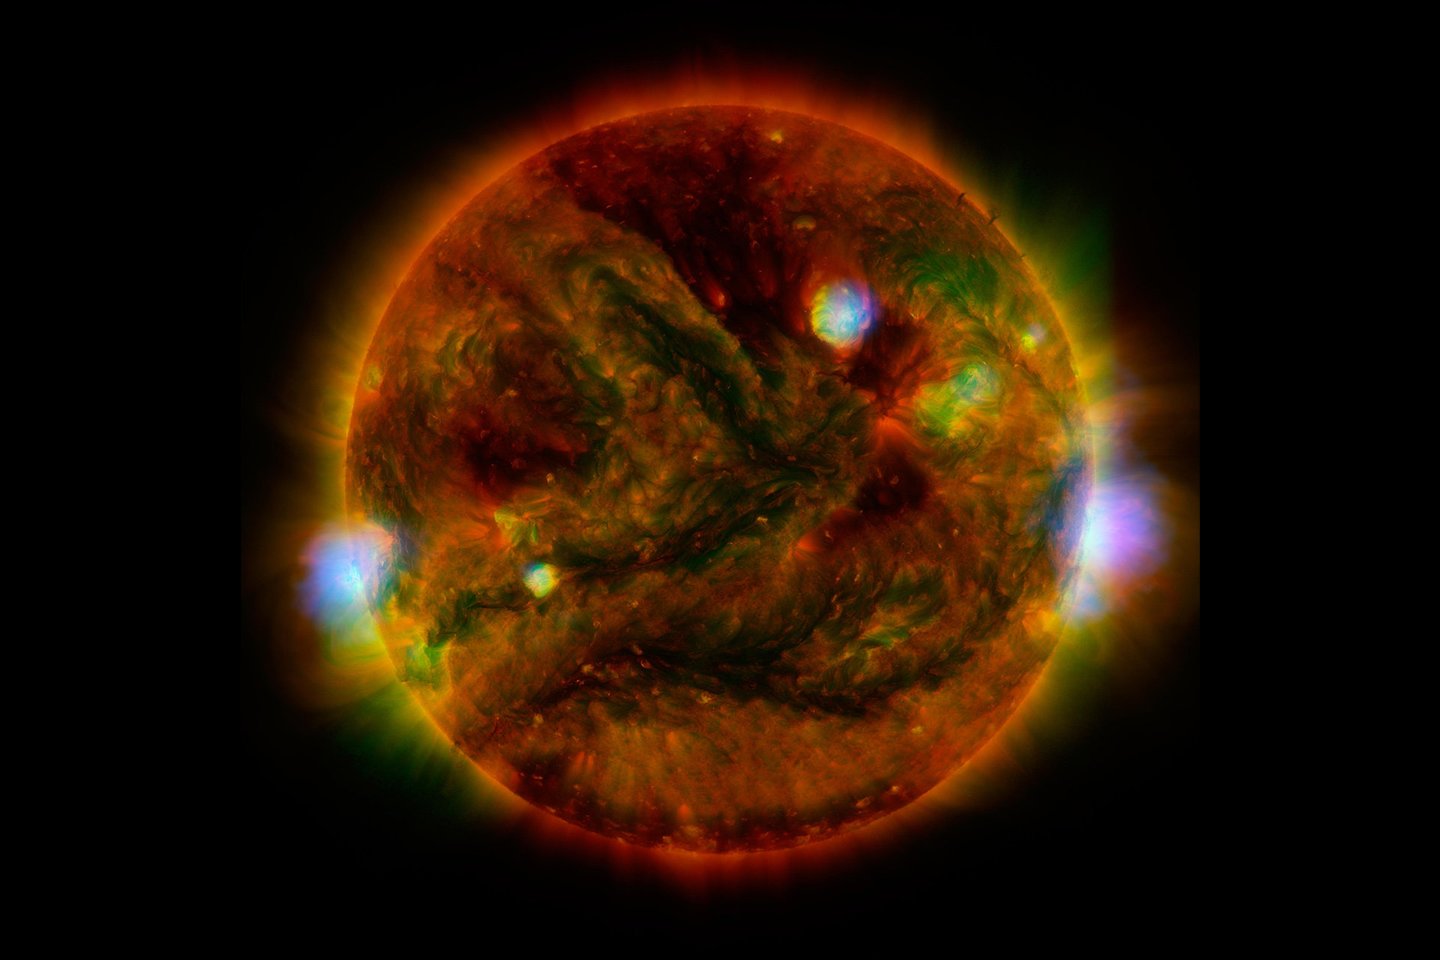  Vidinės Saulės dalys sukasi greičiau nei paviršius - tai sukuria tokius reiškinius kaip Saulės dėmės, žybsnius bei vainiko masės išmetimus.<br> NASA nuotr.